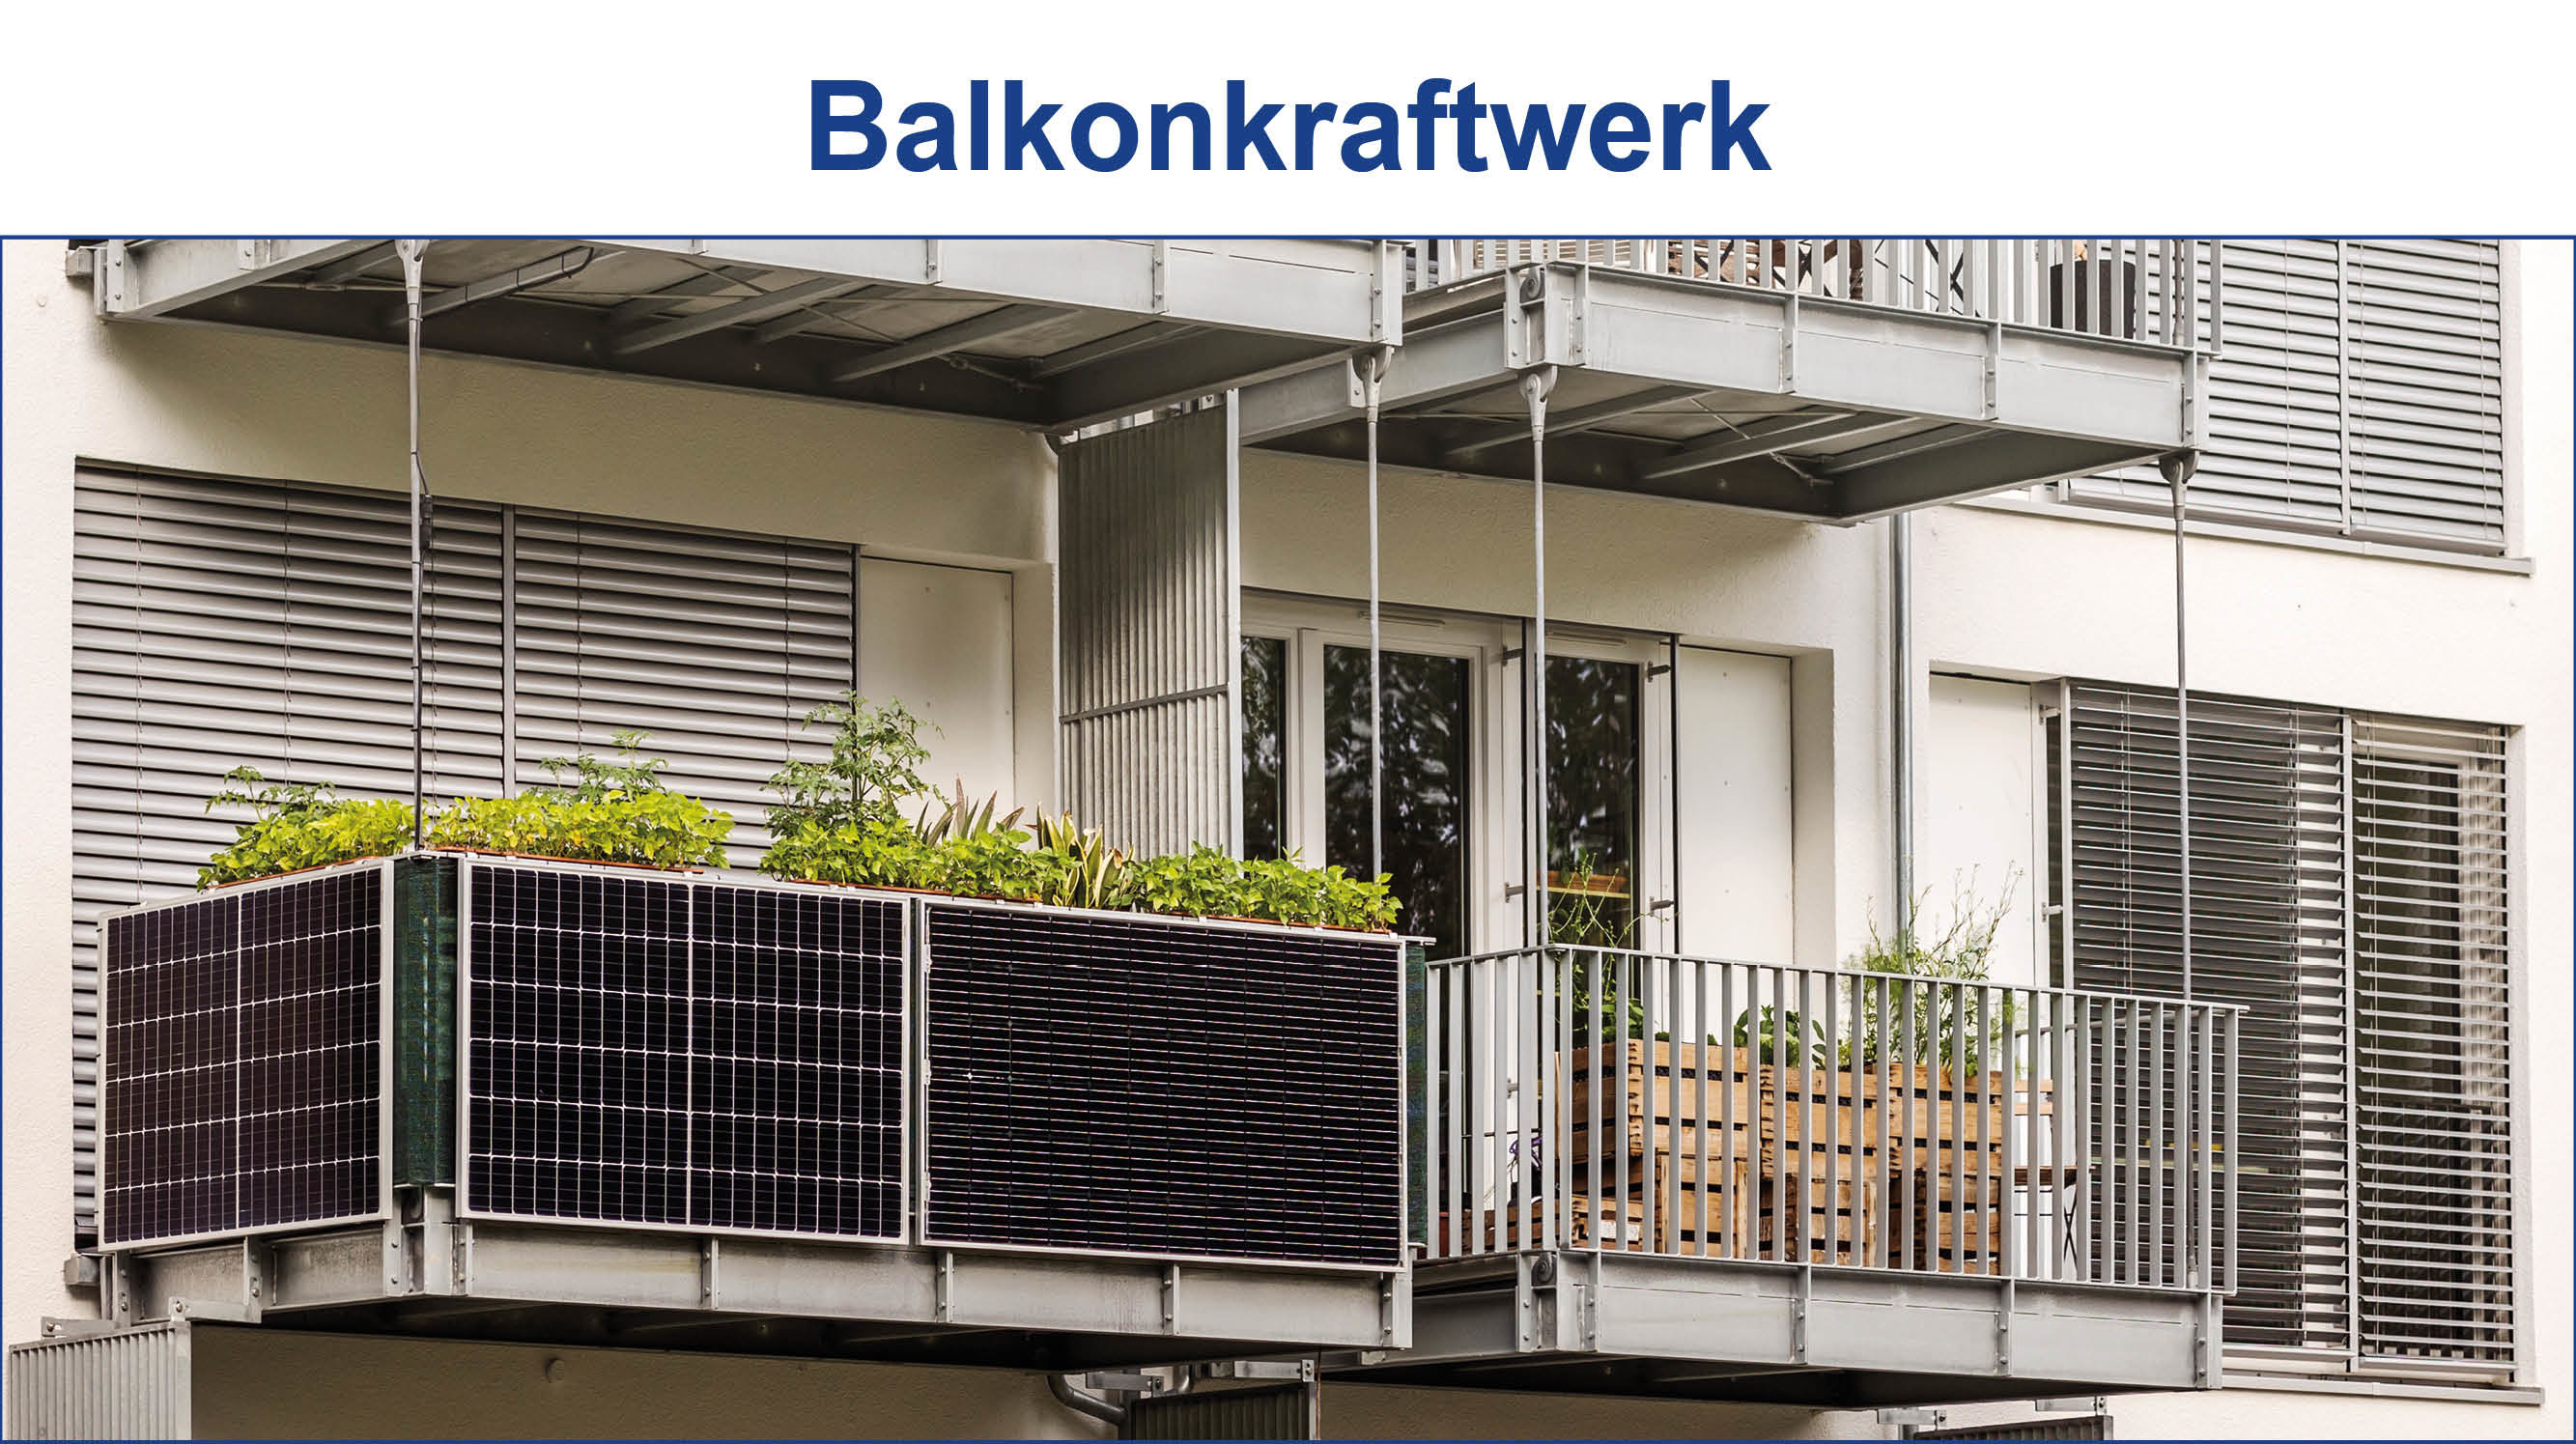 Balkonkraftwerk &Solarsteckergeräte in Bielefeld am Balkon